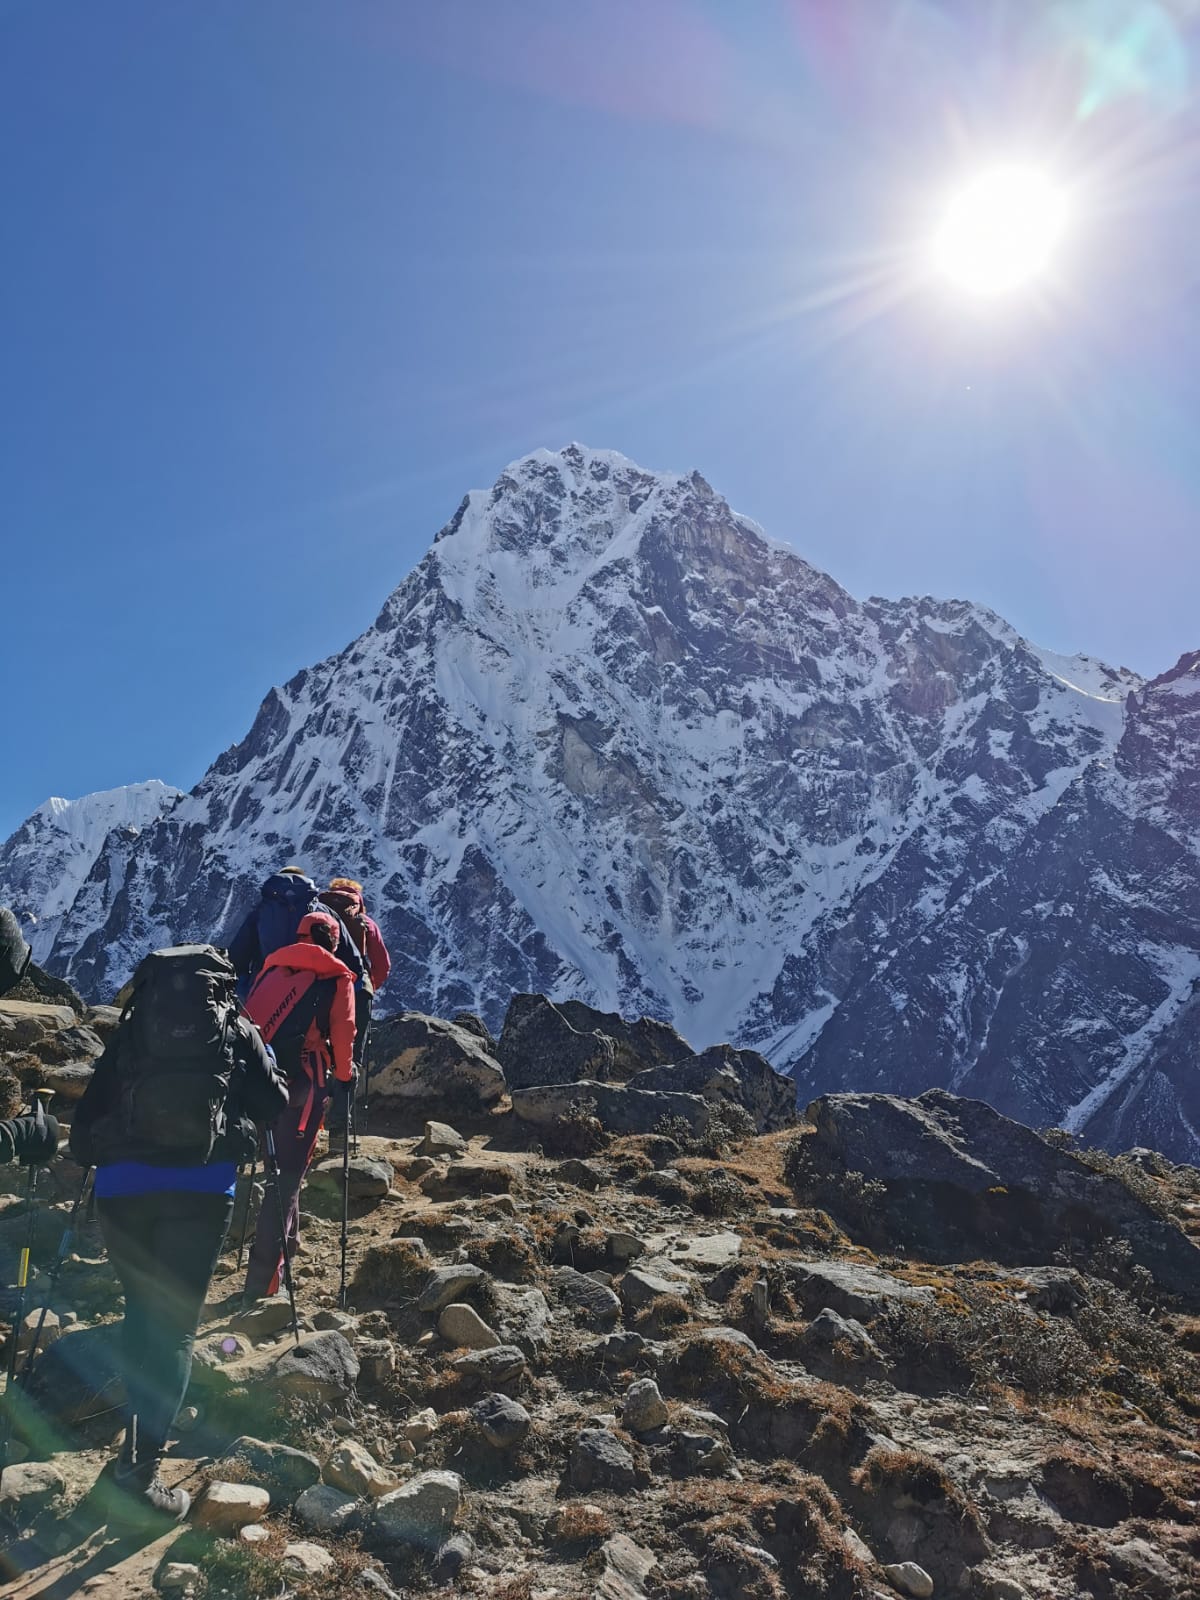 Meroway - Wybierz Twoją drogę podróży | Trekking Nepal